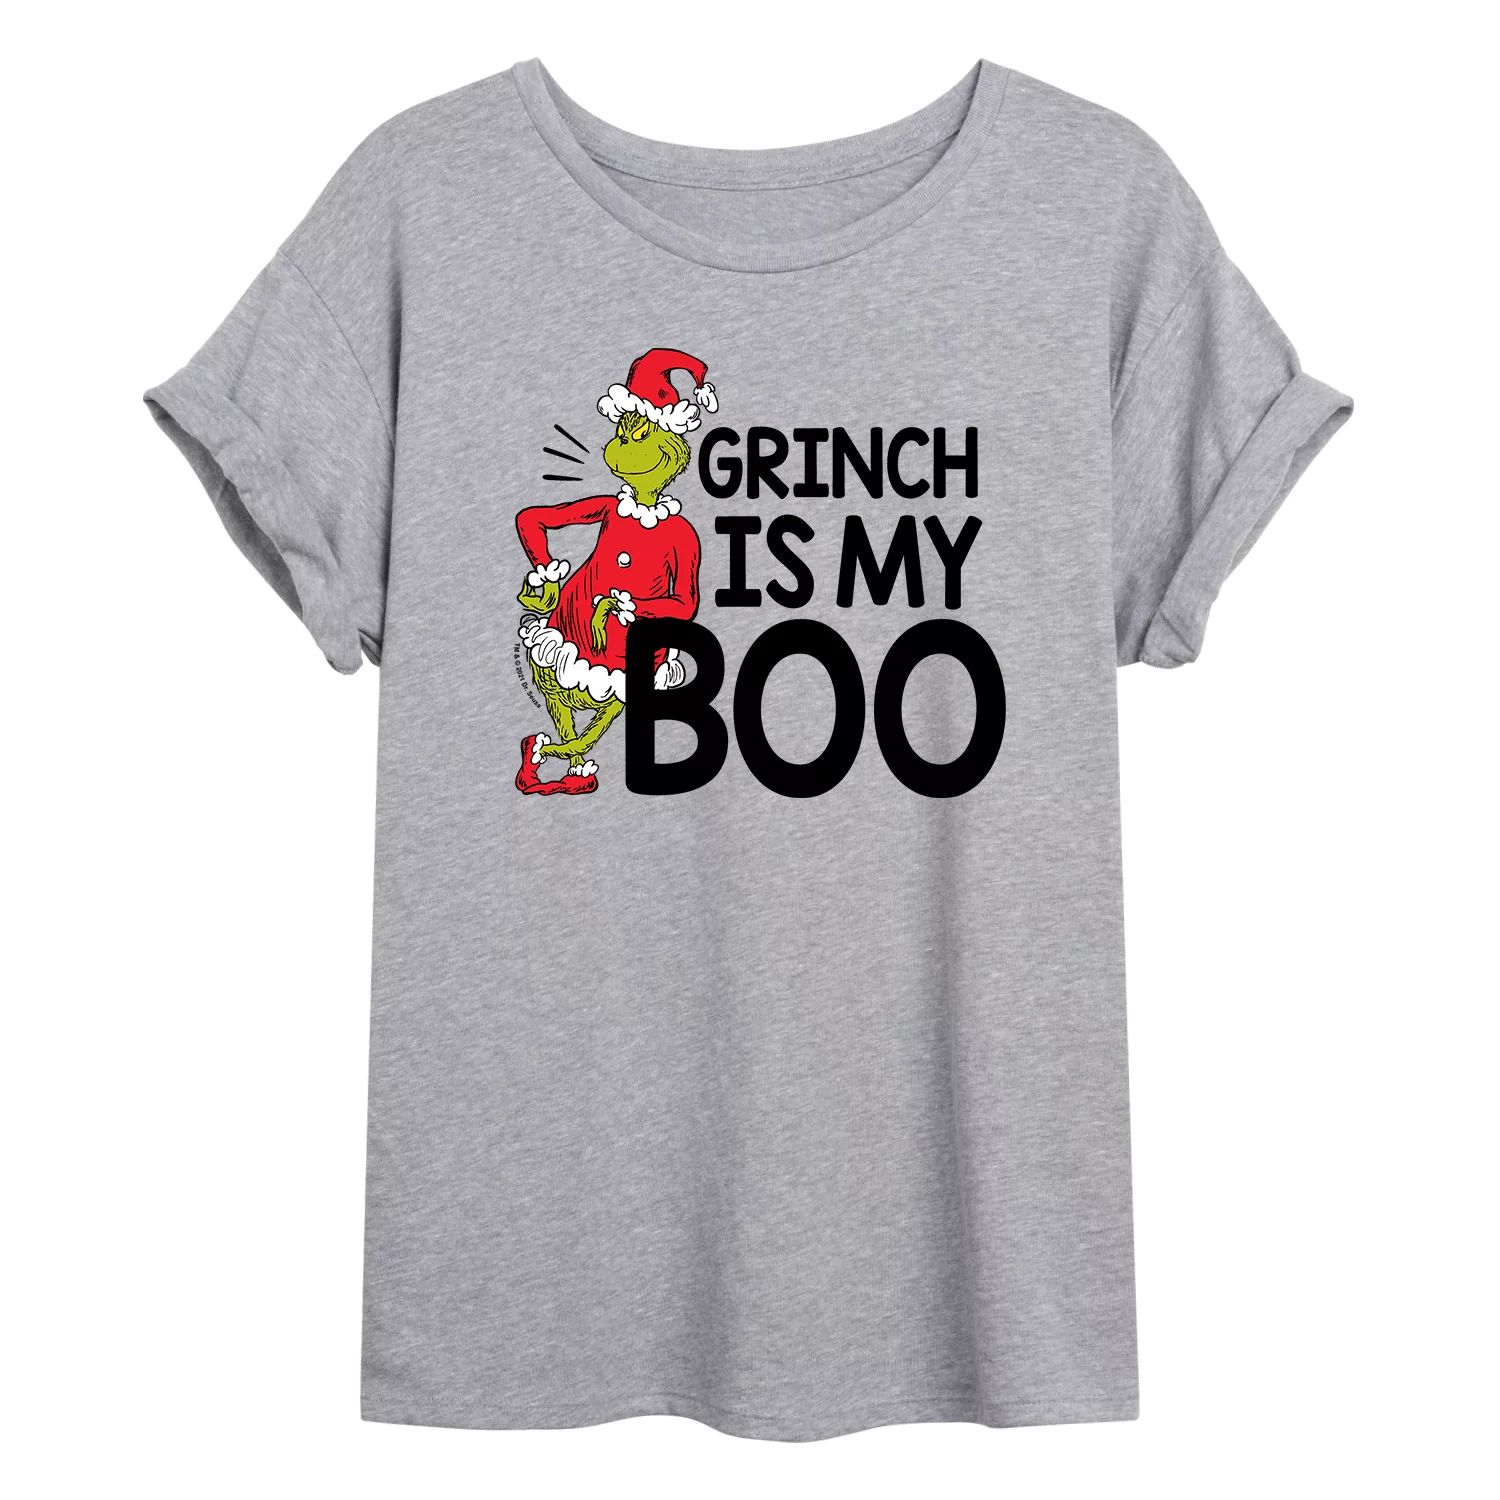 Огромная футболка с рисунком «Доктор Сьюз Гринч» для юниоров — My Boo Licensed Character